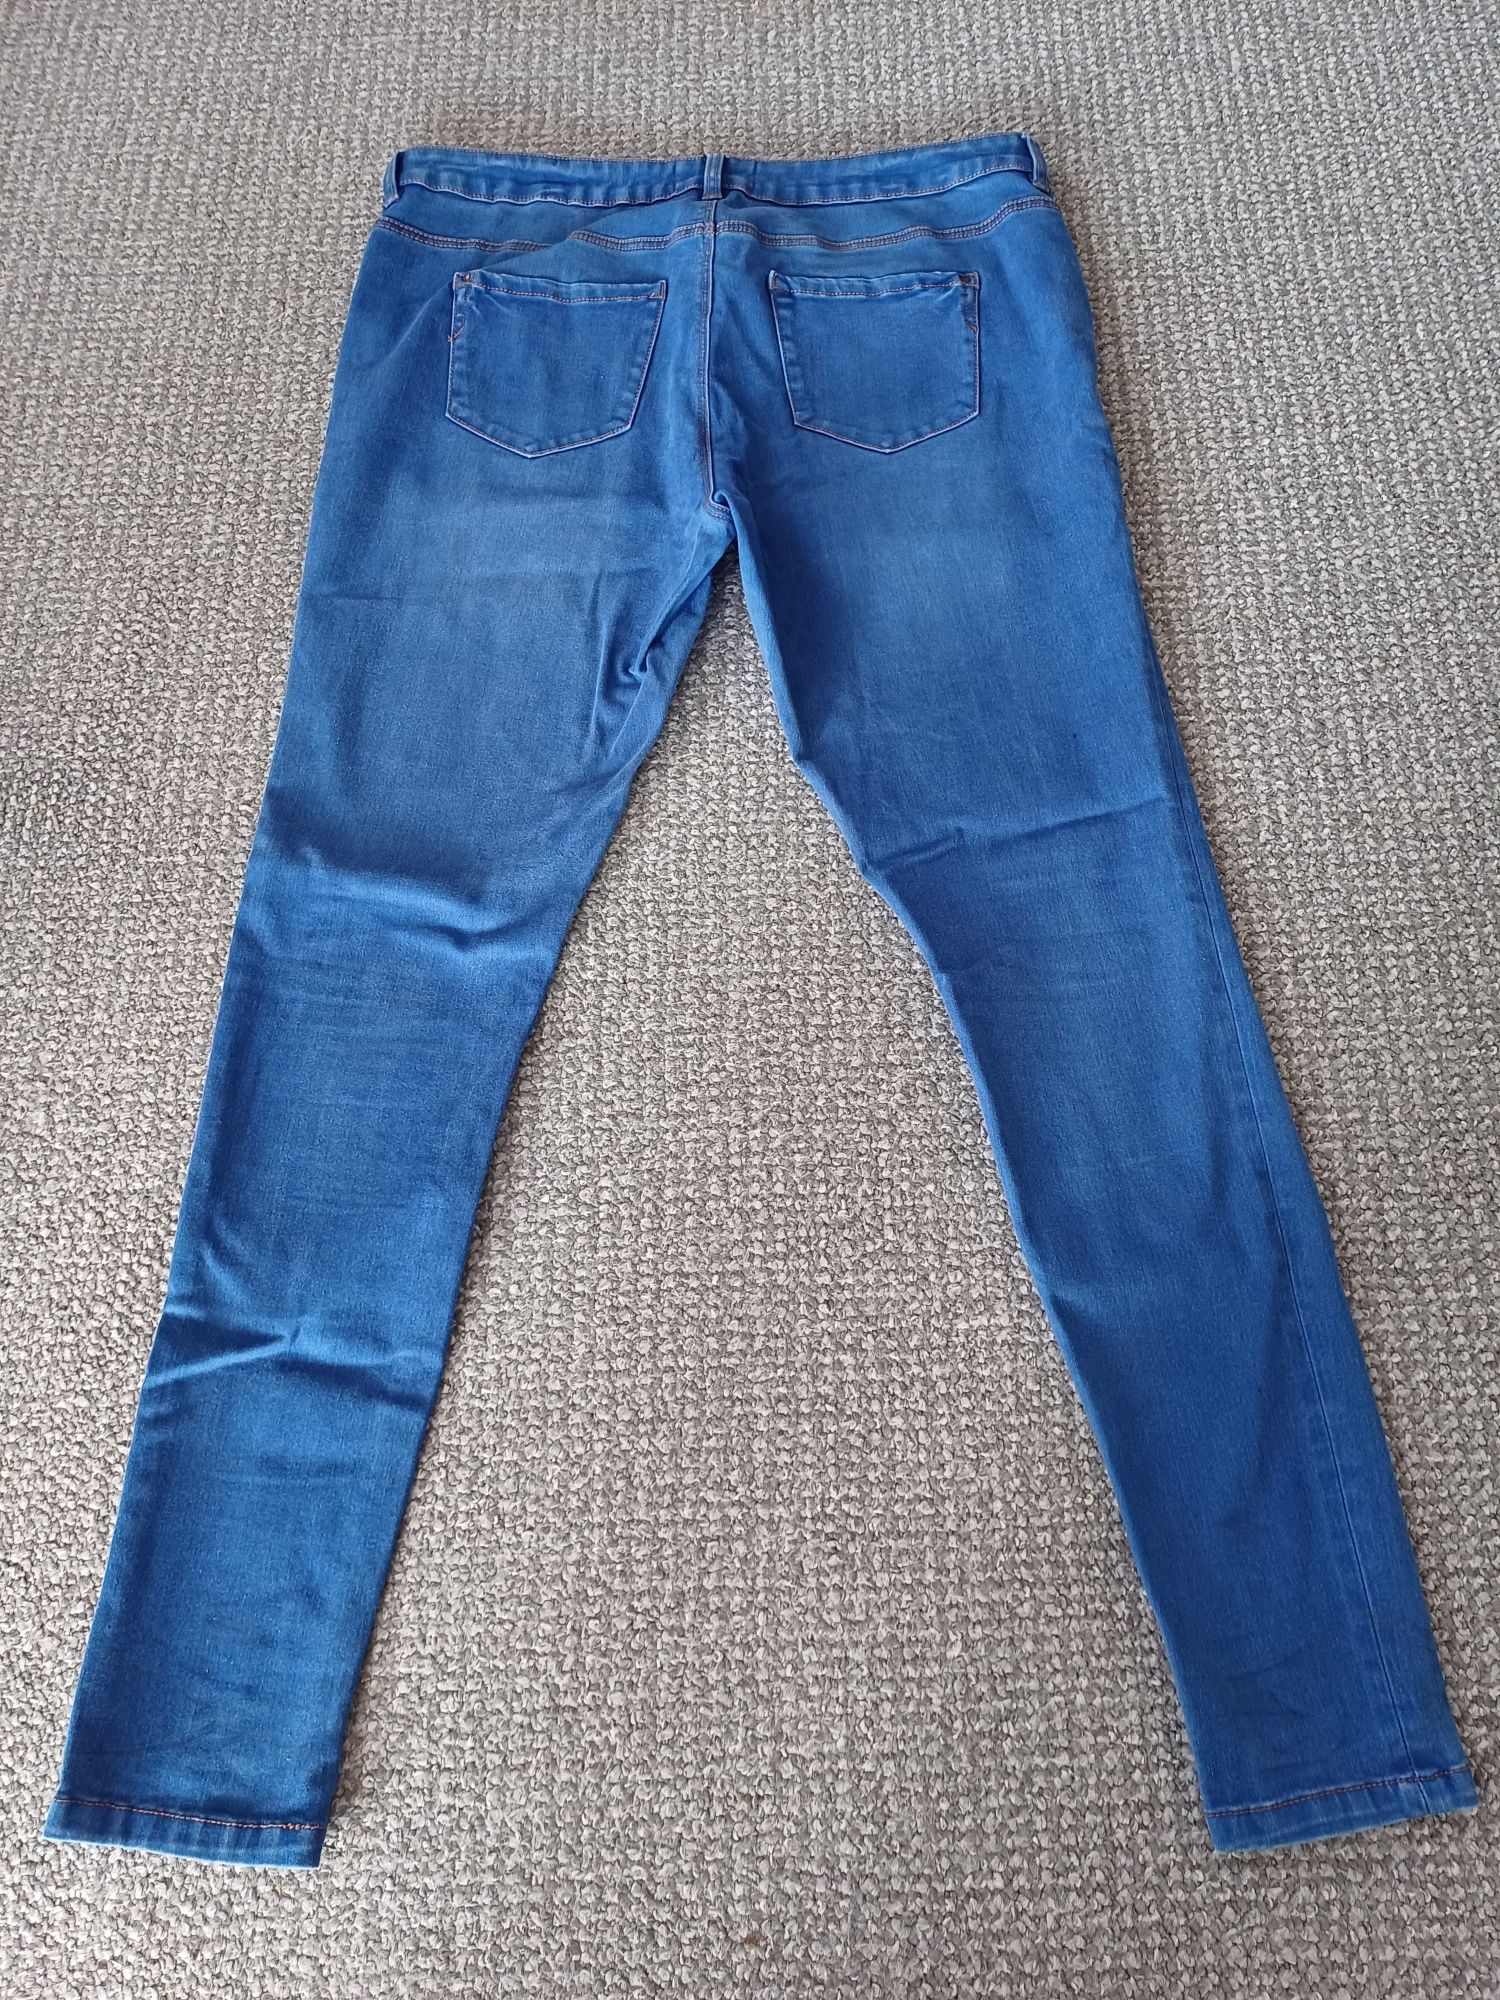 Spodnie spodenki jeansowe damskie ciążowe New Look 44  XXL